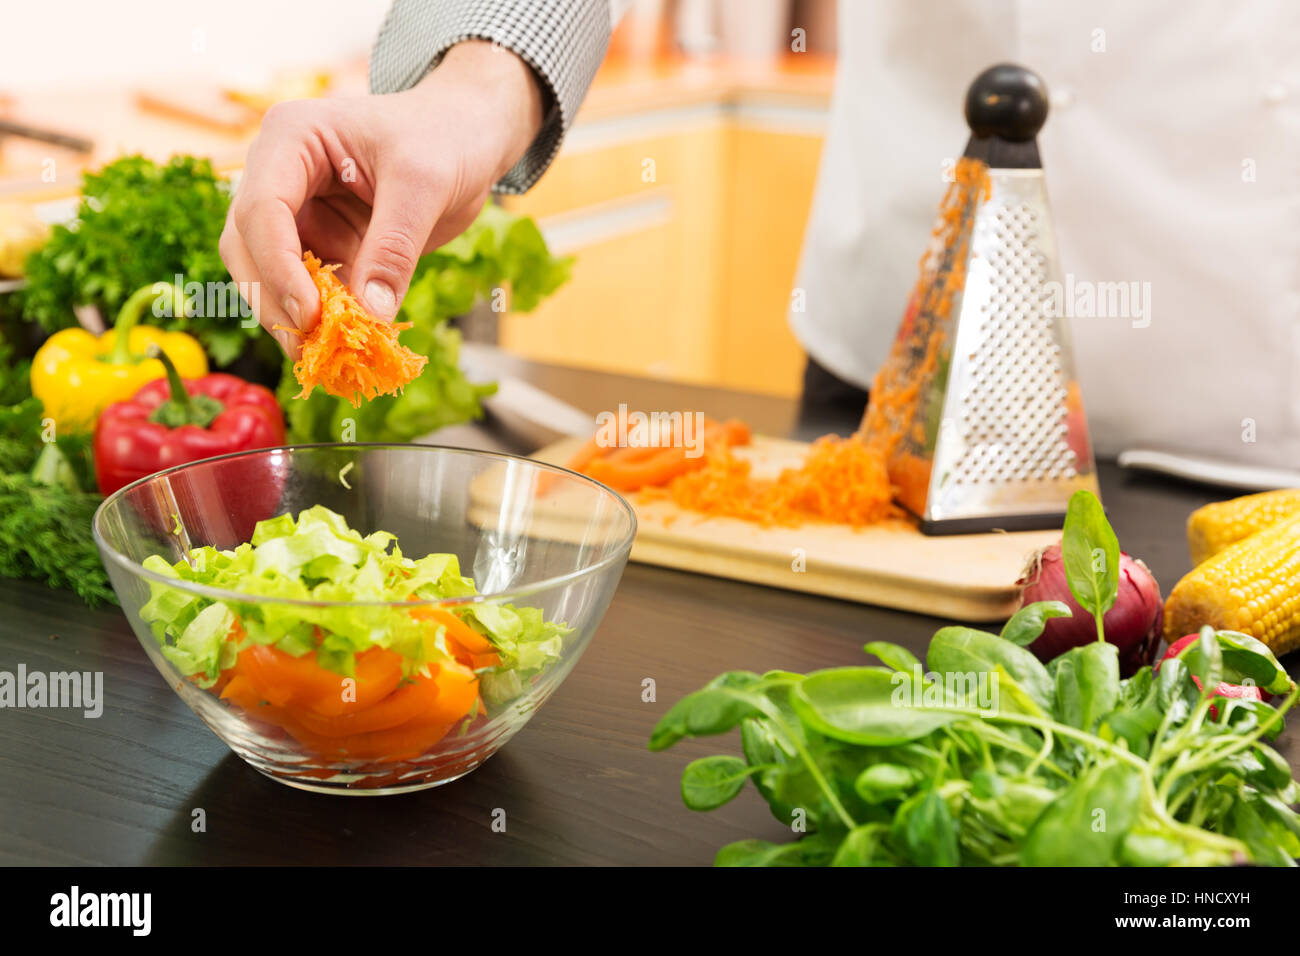 Nourriture vegan - préparer une salade de légumes avec des carottes râpées Banque D'Images